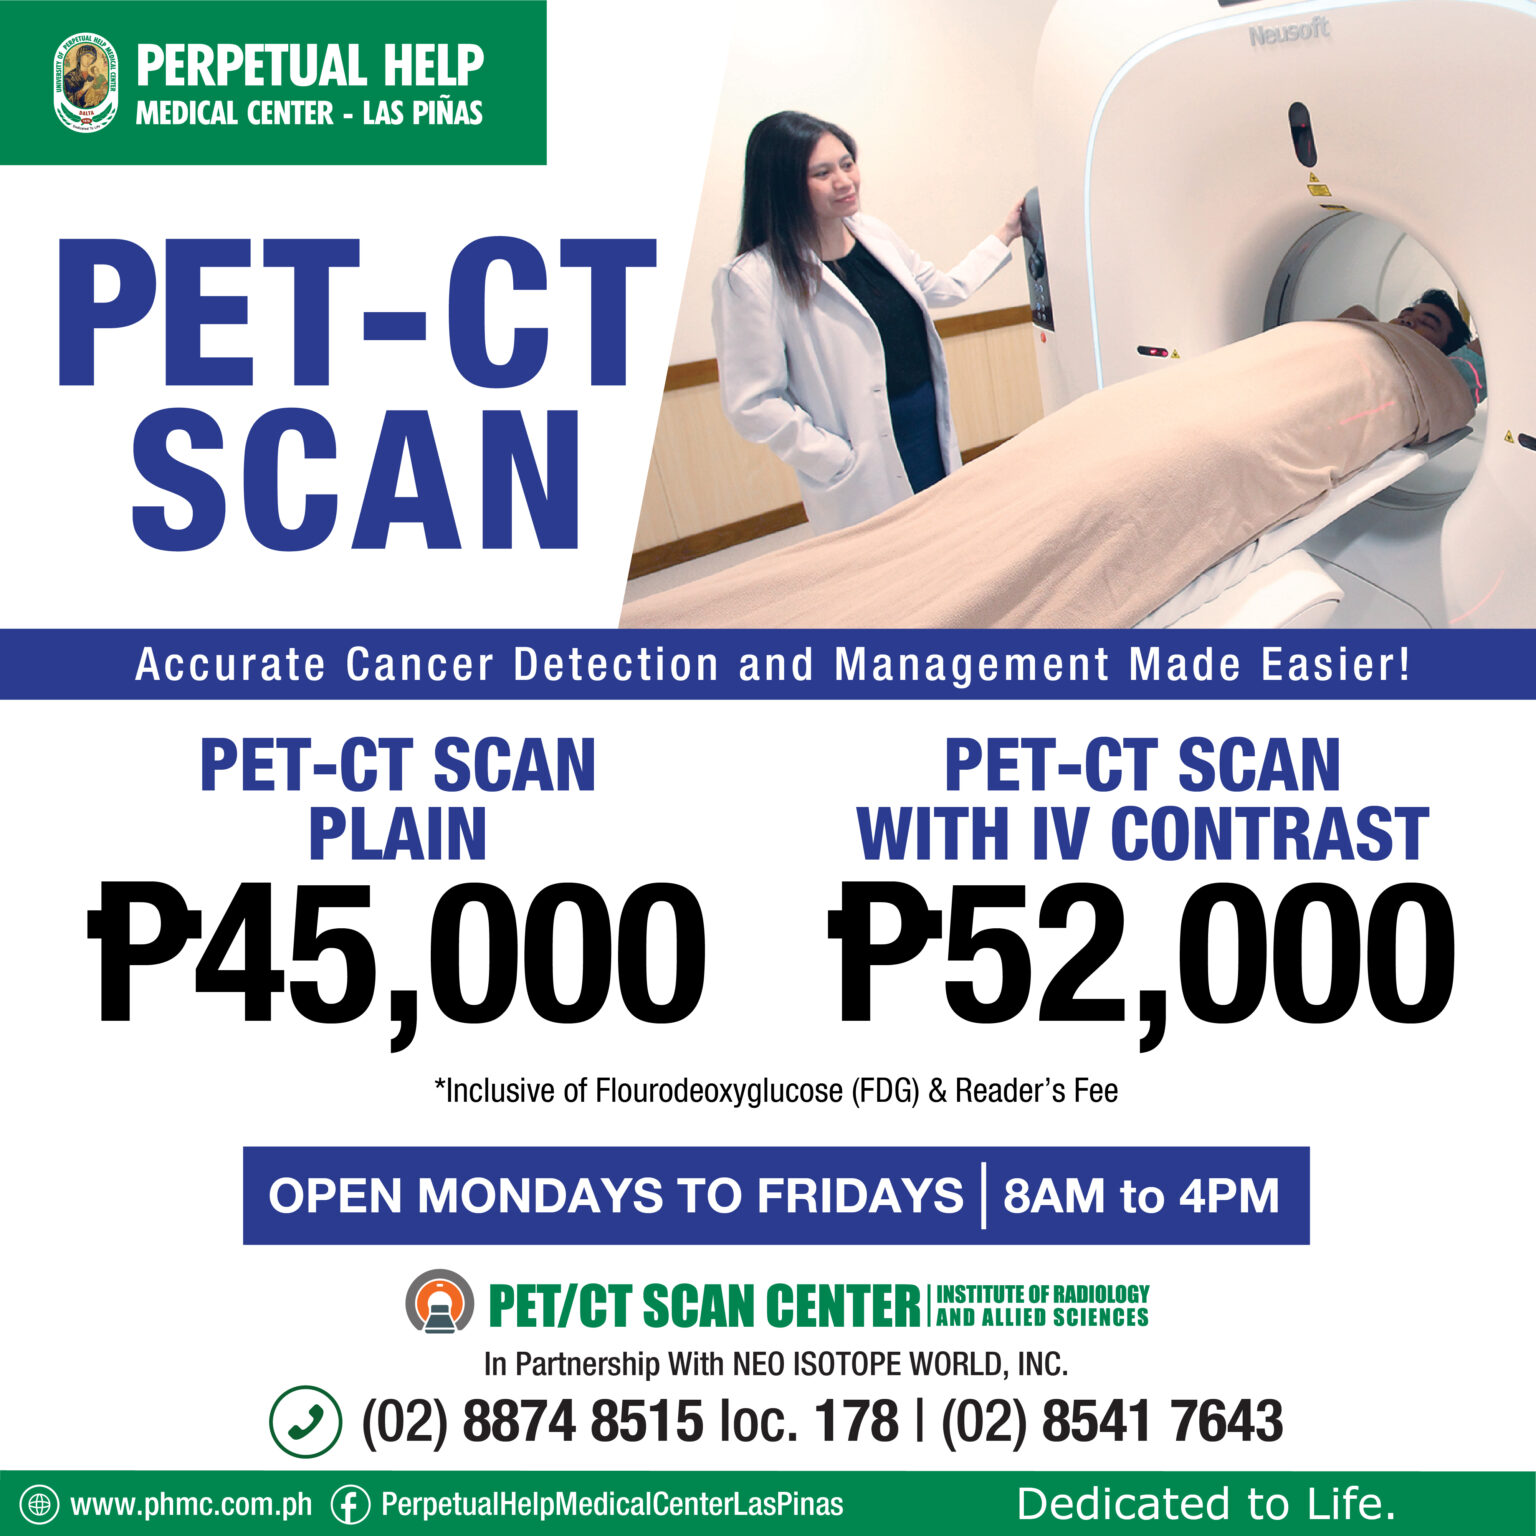 PET CT SCAN P2 000 CASH REBATE PROMO Perpetual Help Medical Center